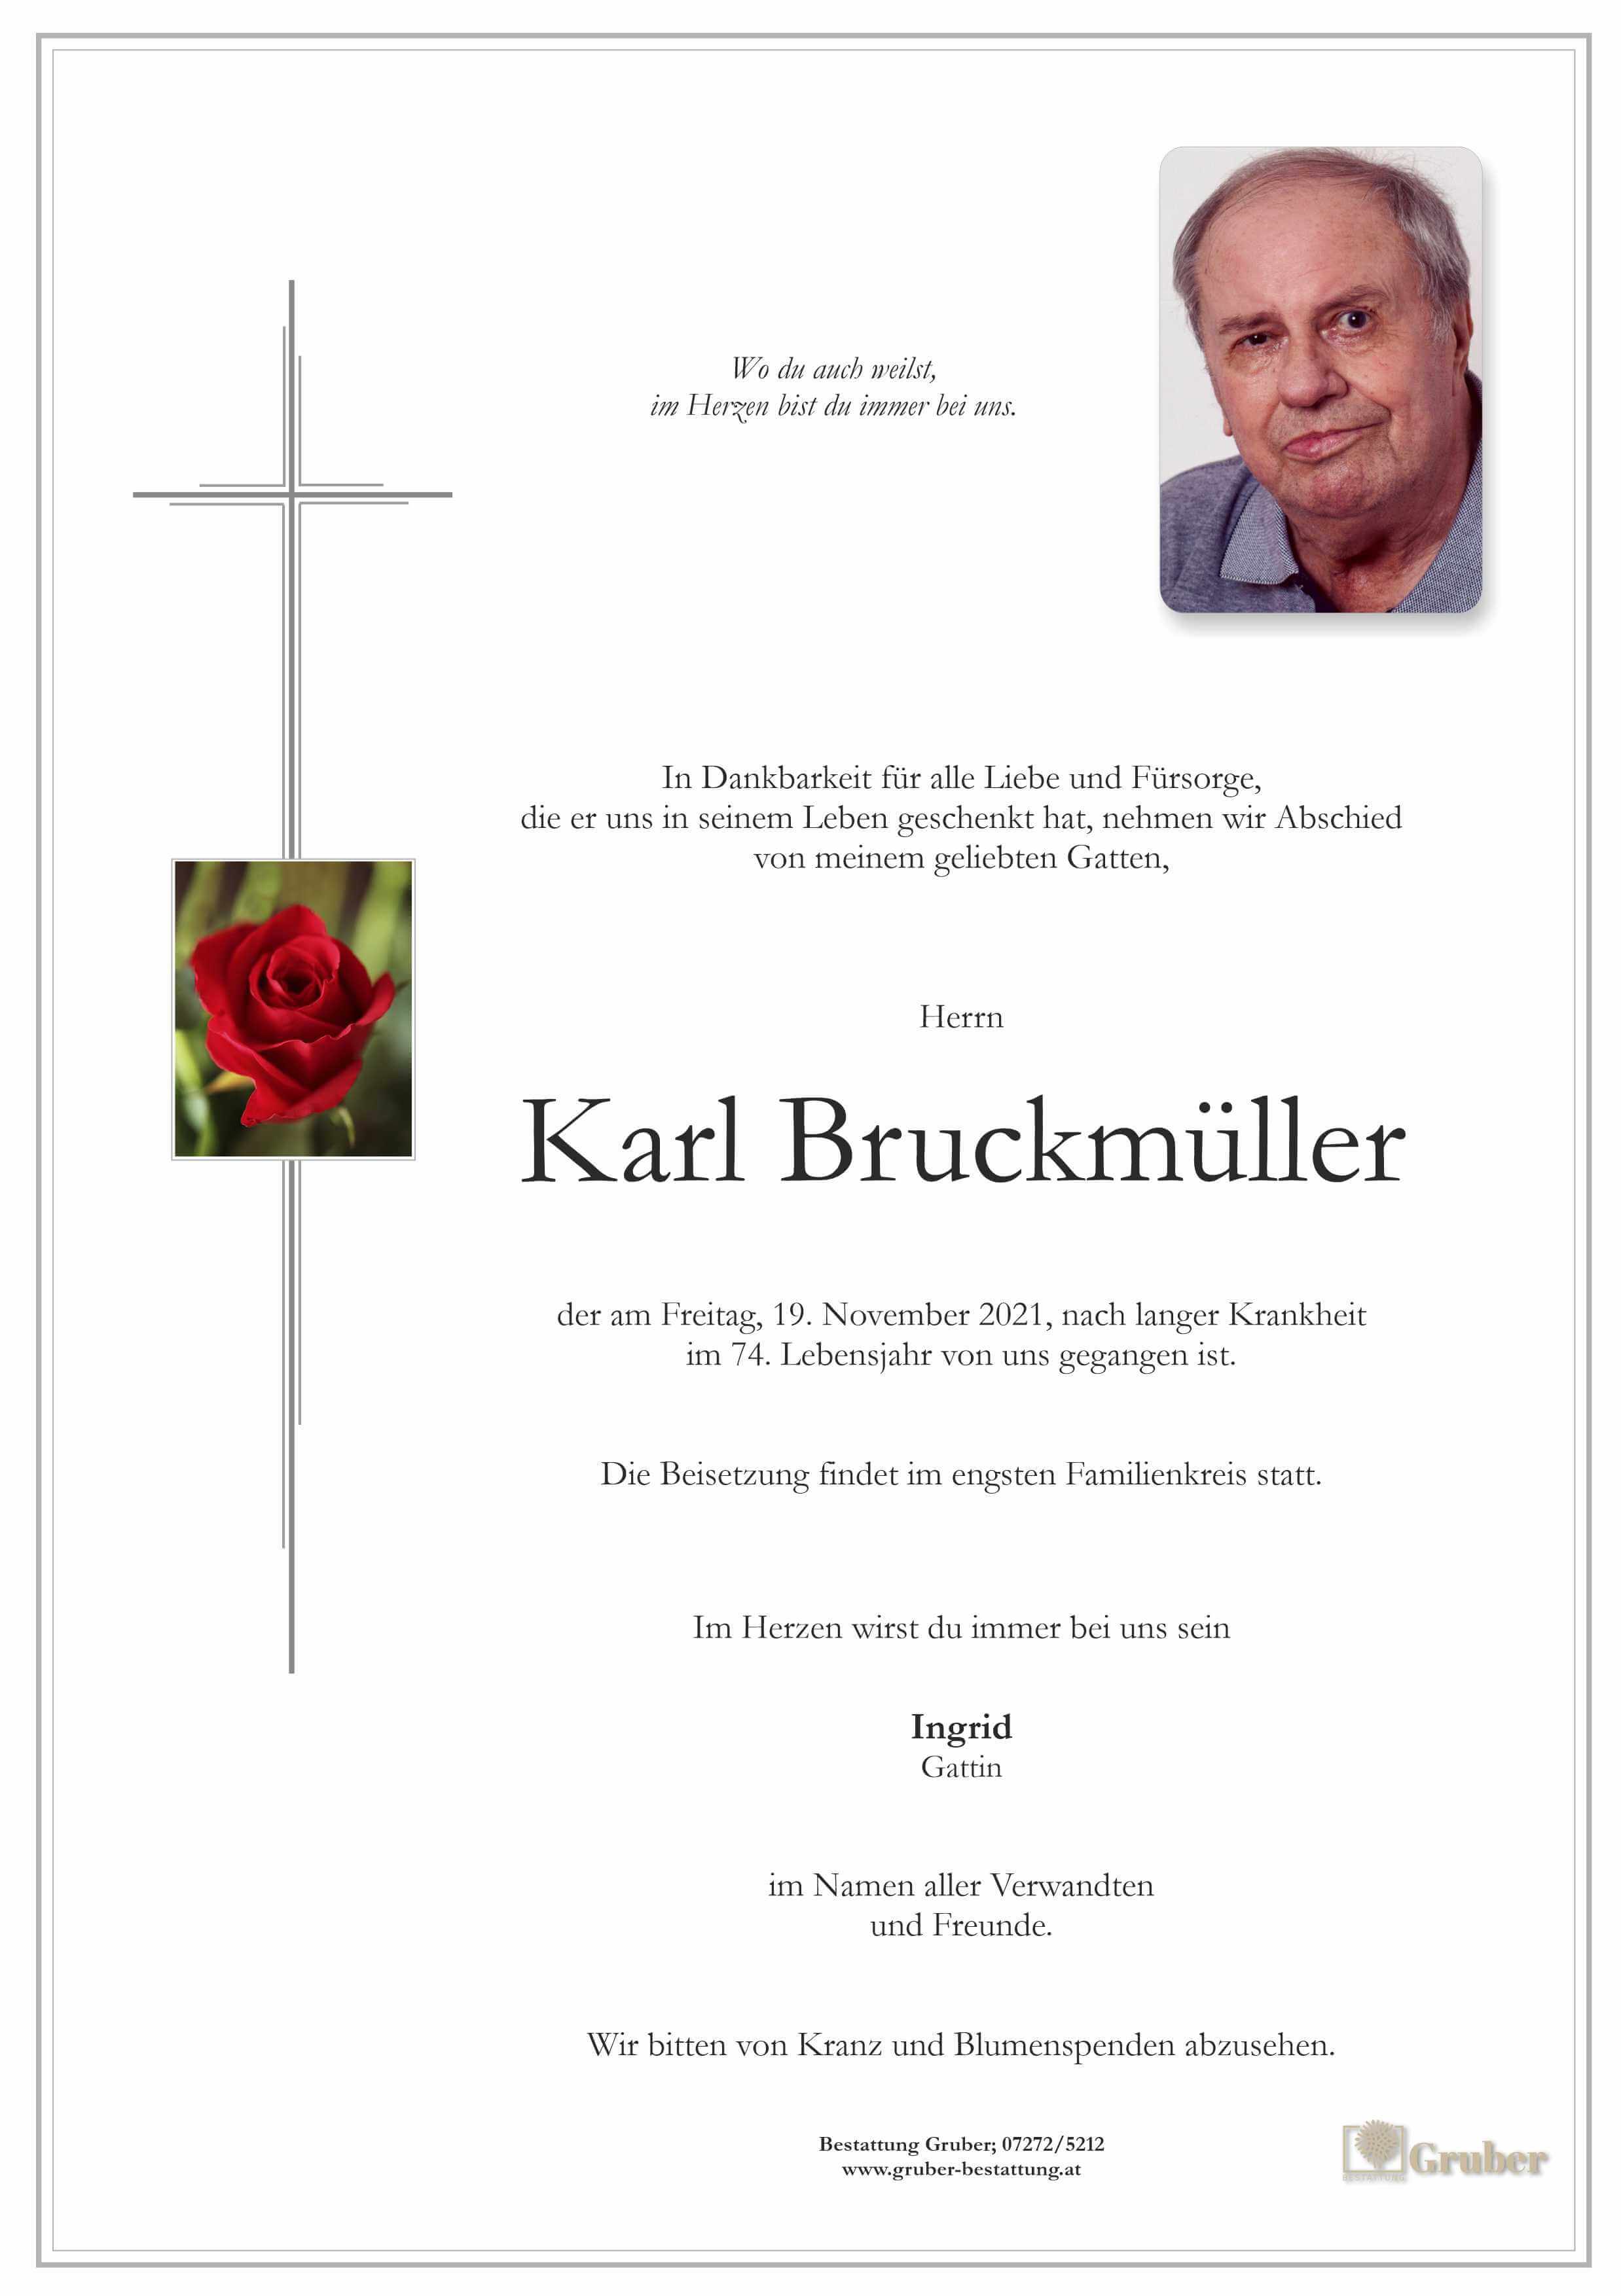 Karl Bruckmüller (Holzhausen)